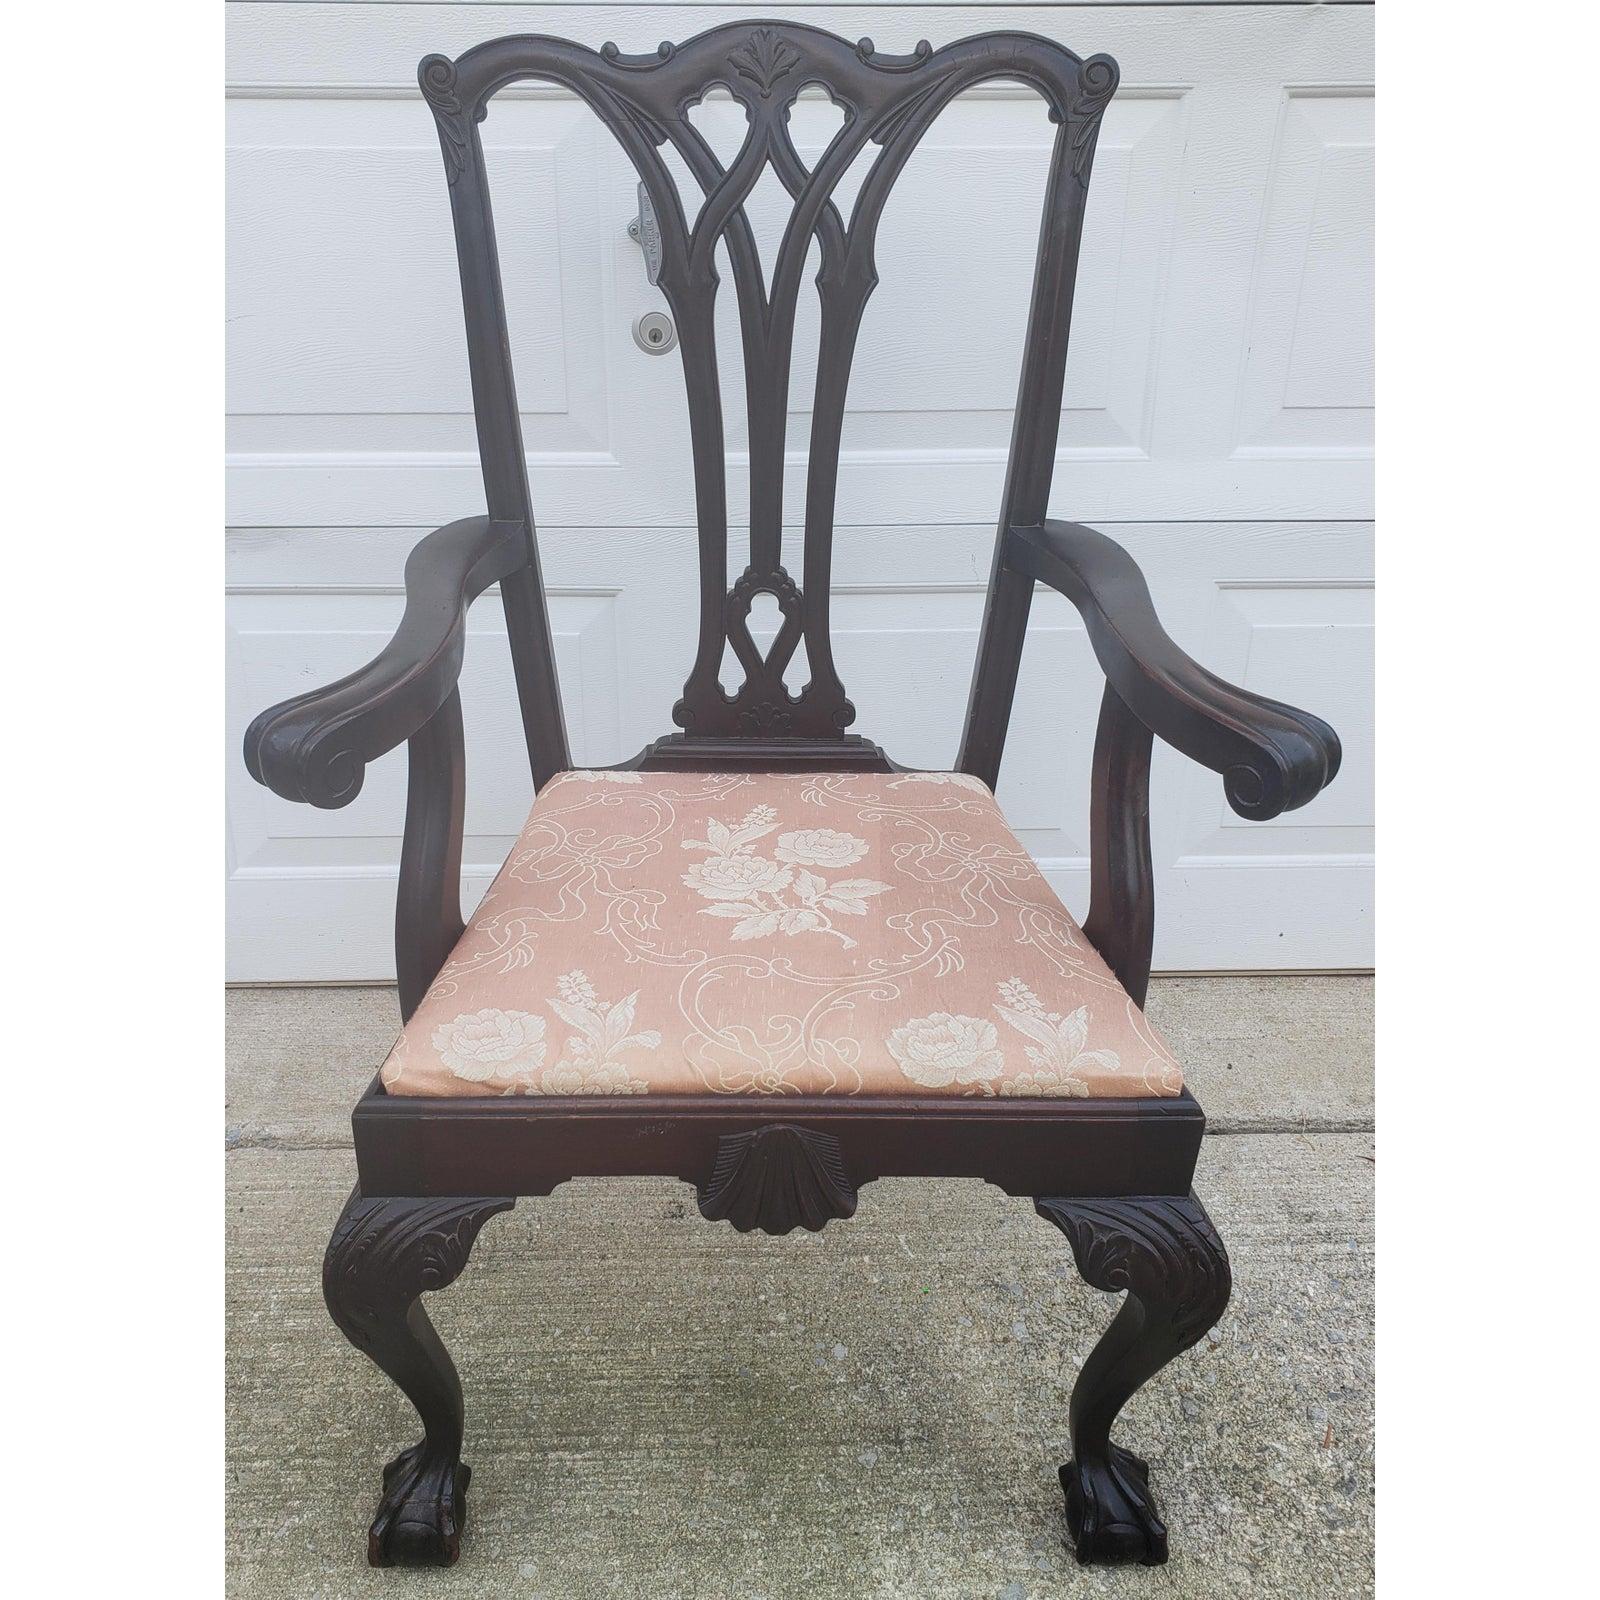 Antiker geschnitzter Mahagoni-Sessel im Chippendale-Stil aus den 1920er Jahren.
Dieser Stuhl ist sehr stabil und in gutem Zustand.
Einige Schrammen hier und da im Einklang mit Alter und normalen Gebrauch. Die Maße sind 27,5 